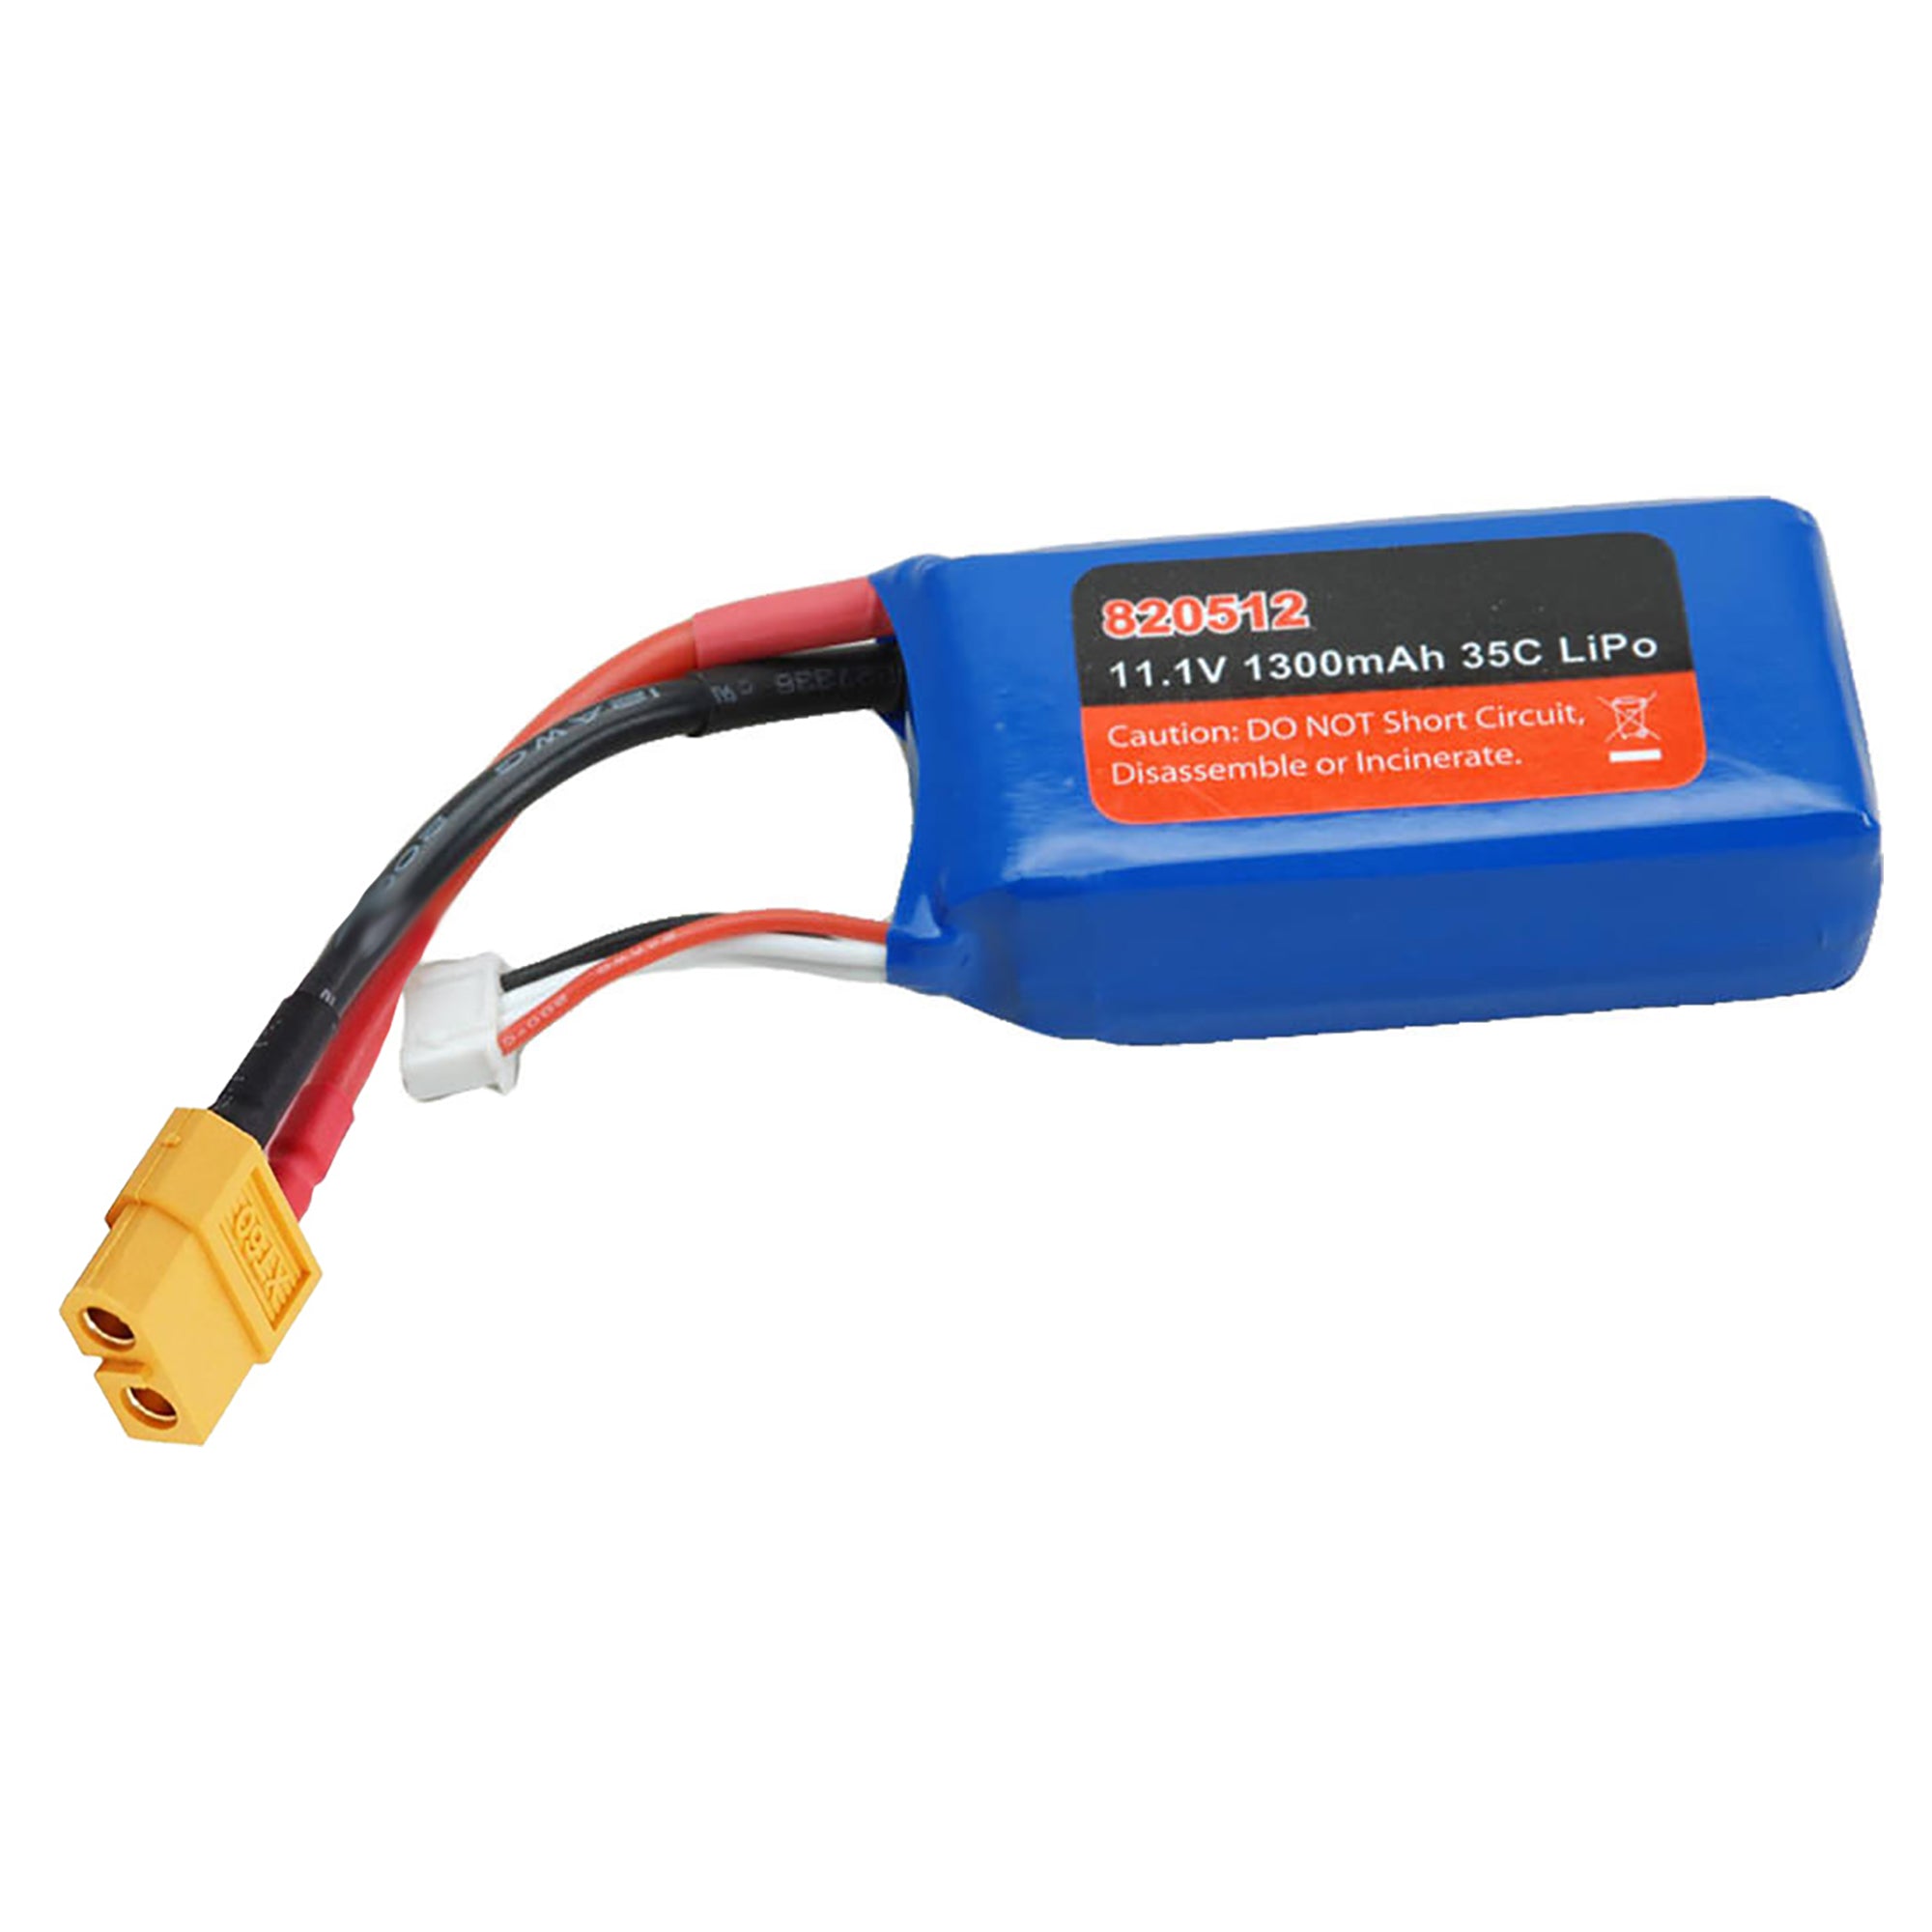 Joysway 820512 11.1V 1300mAh LiPo Battery XT60 Connector